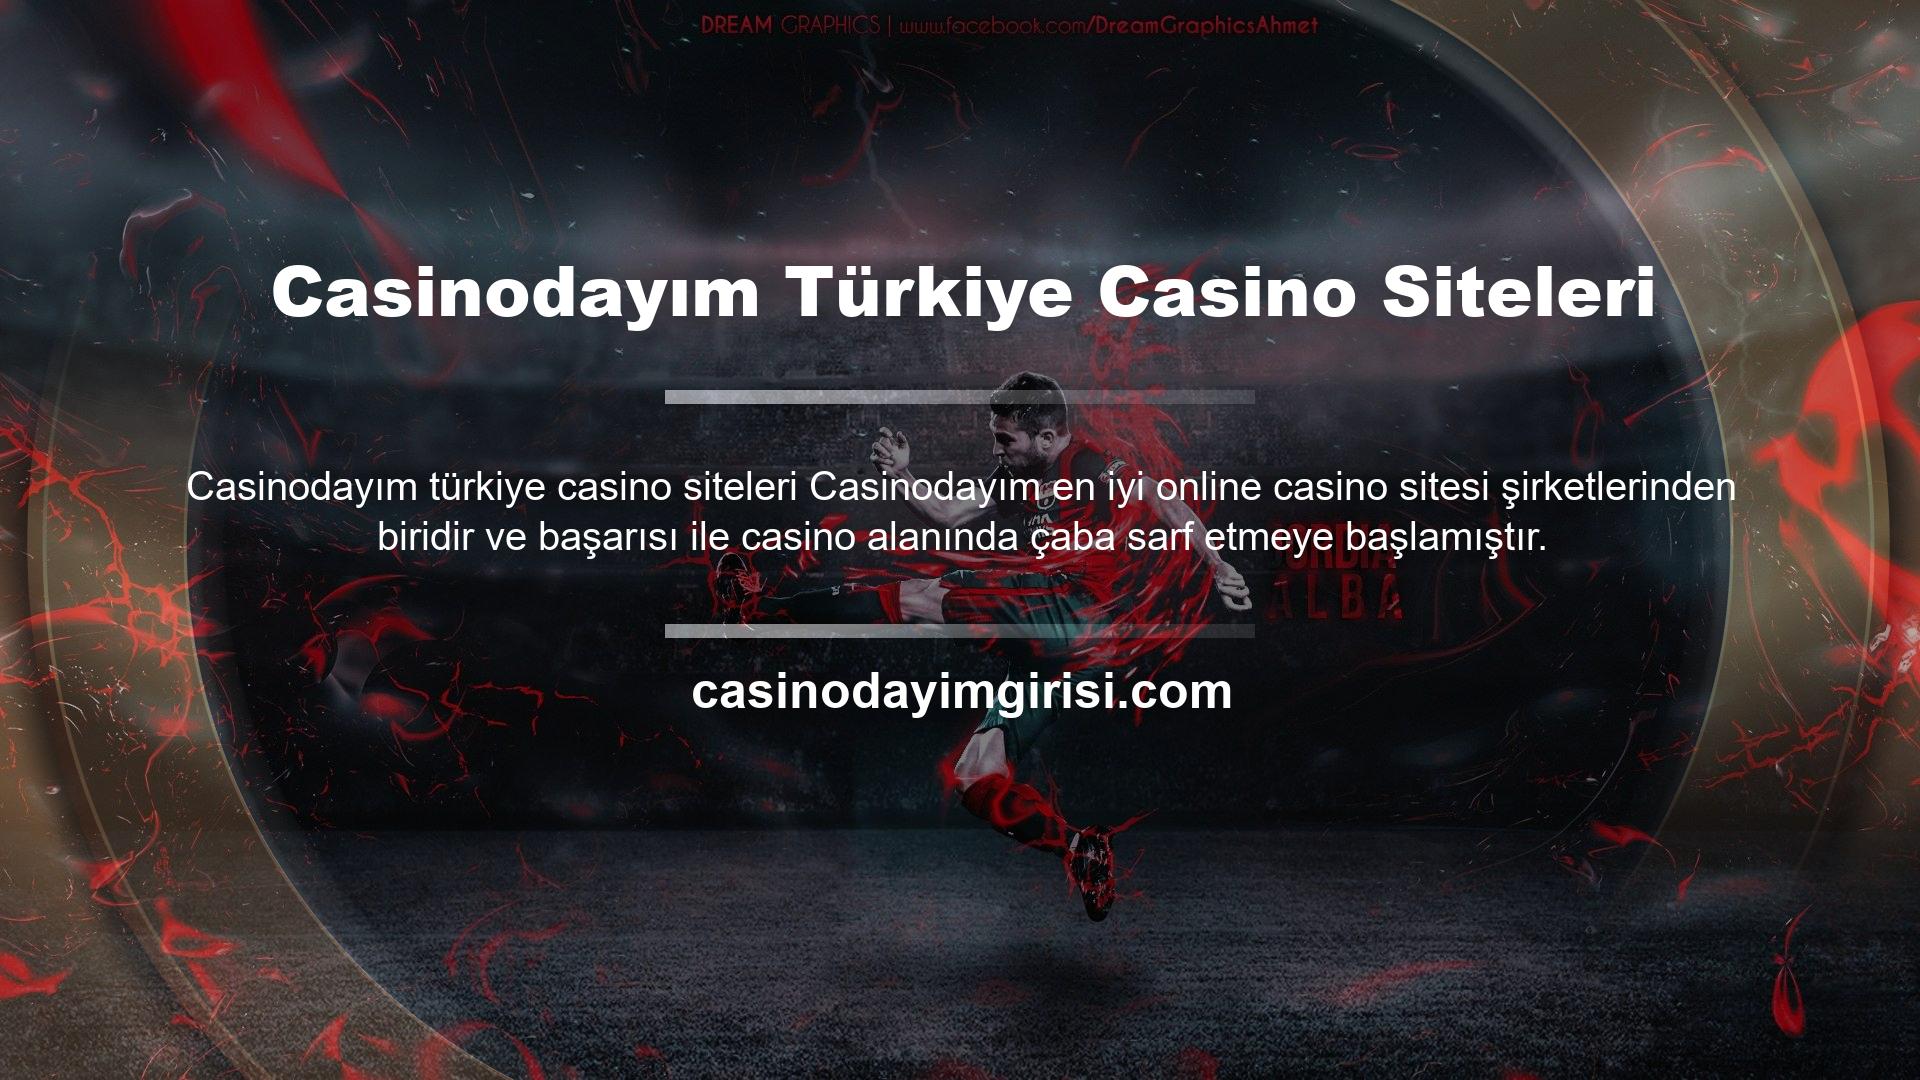 Casinodayım, Türkçe çevirisinde kusurlar olmasına rağmen, oyunlarının kalitesiyle bunu dengelemek amacıyla kısa bir süre önce kumarhane web sitesini Türkçe'ye çevirdi